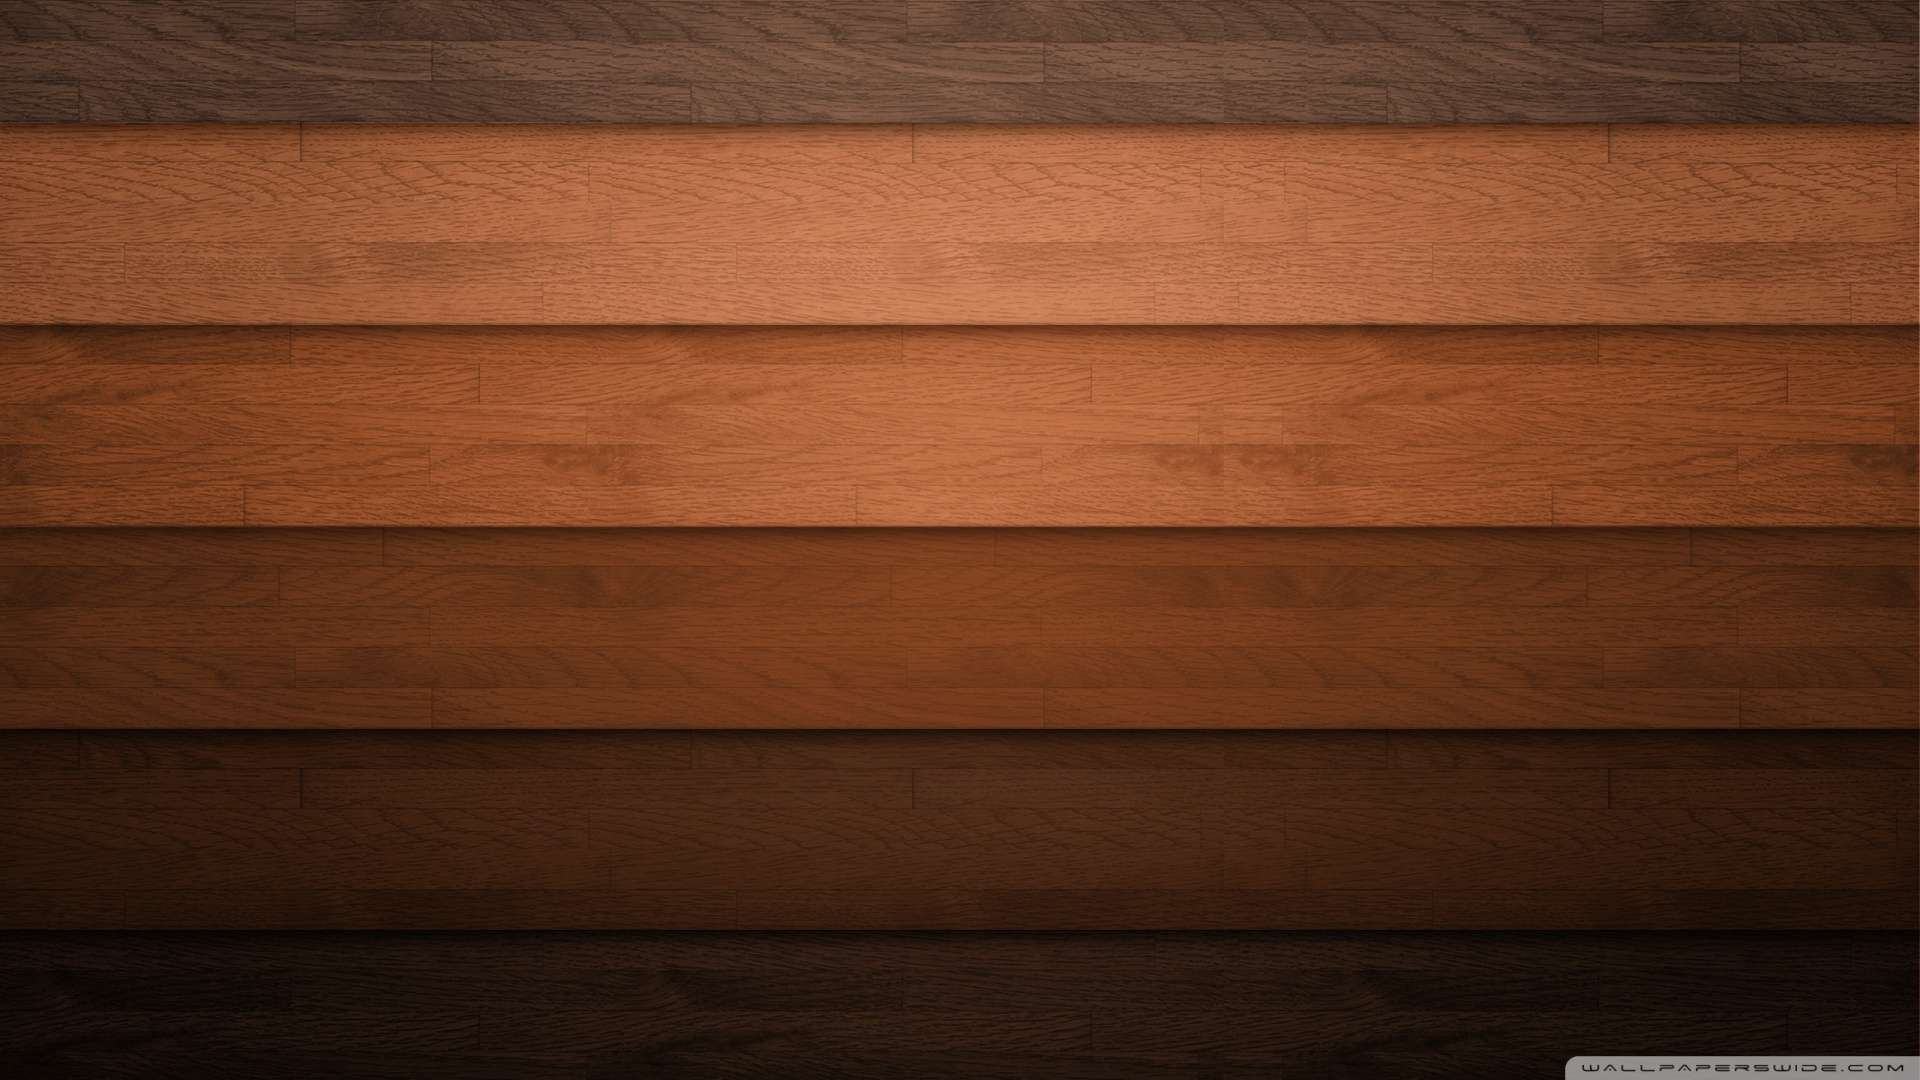 Gợi ý lựa chọn một bức ảnh nền gỗ đẹp, tinh tế và ấn tượng để tôn lên nét sang trọng, độc đáo trong thiết kế của bạn. Hãy thỏa sức trang trí với hình ảnh nền gỗ chất lượng cao này và tạo nên một không gian sống đẳng cấp, đầy phong cách!